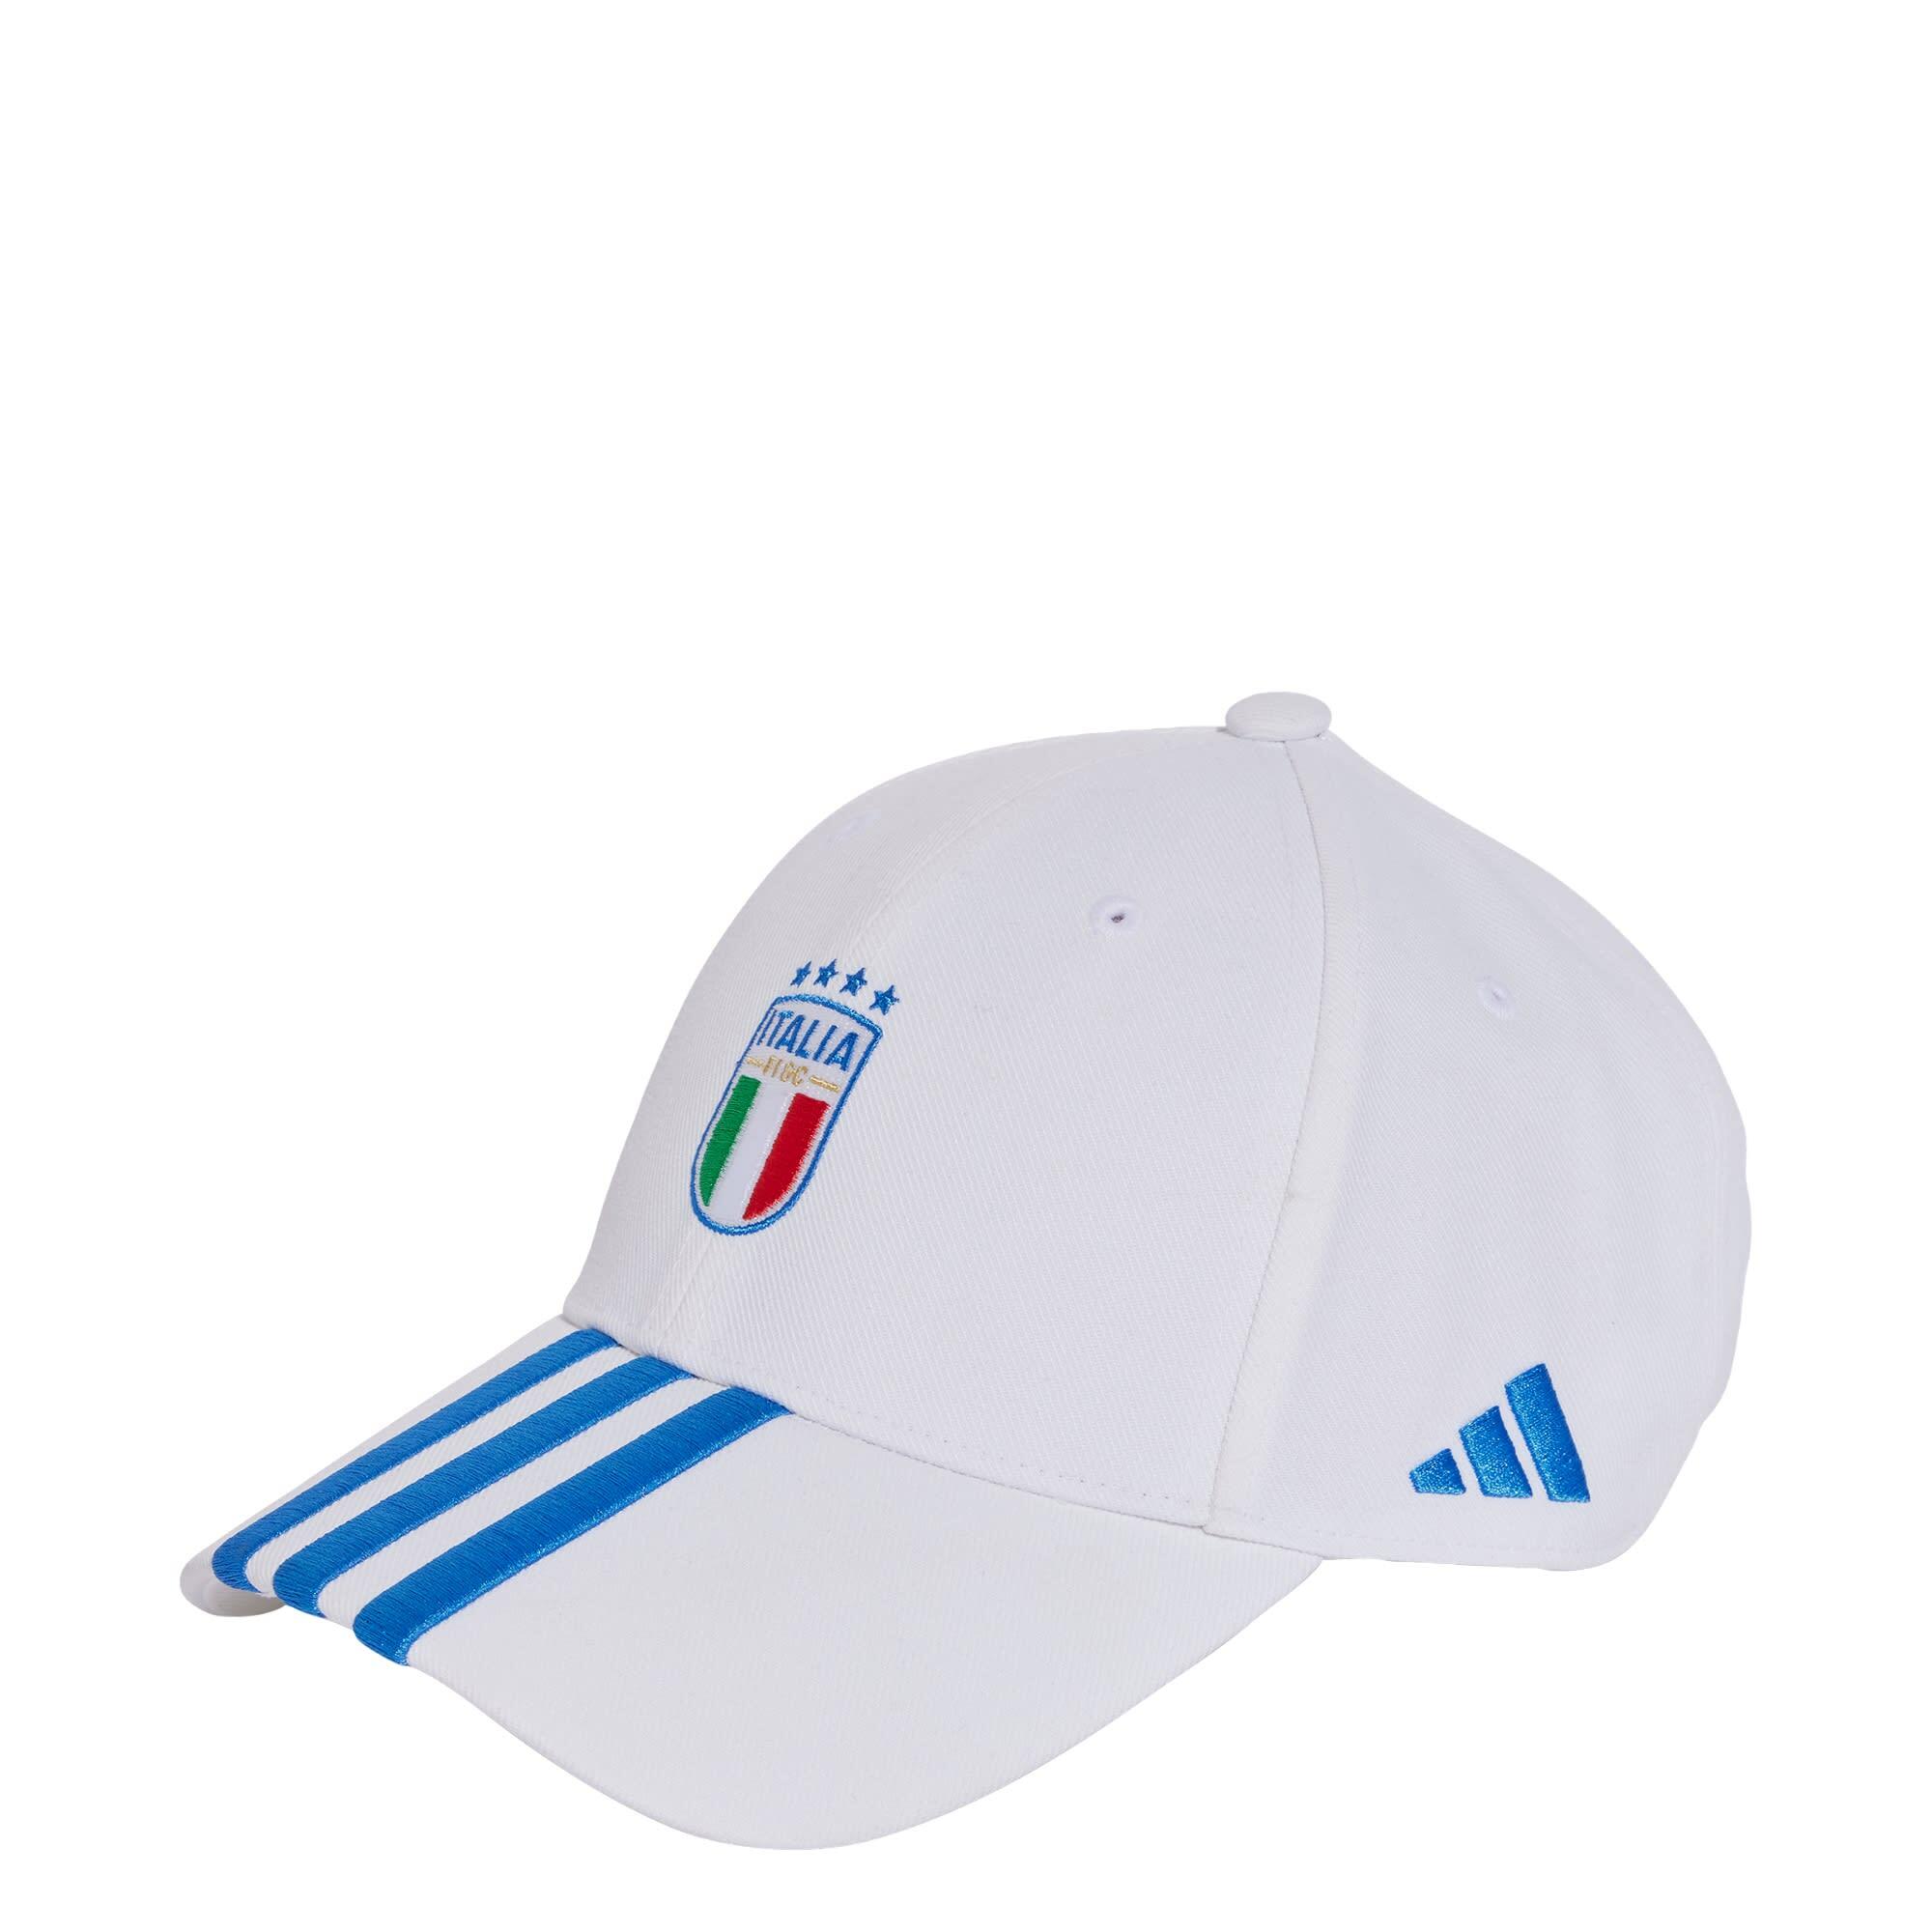 ADIDAS Italy Football Cap